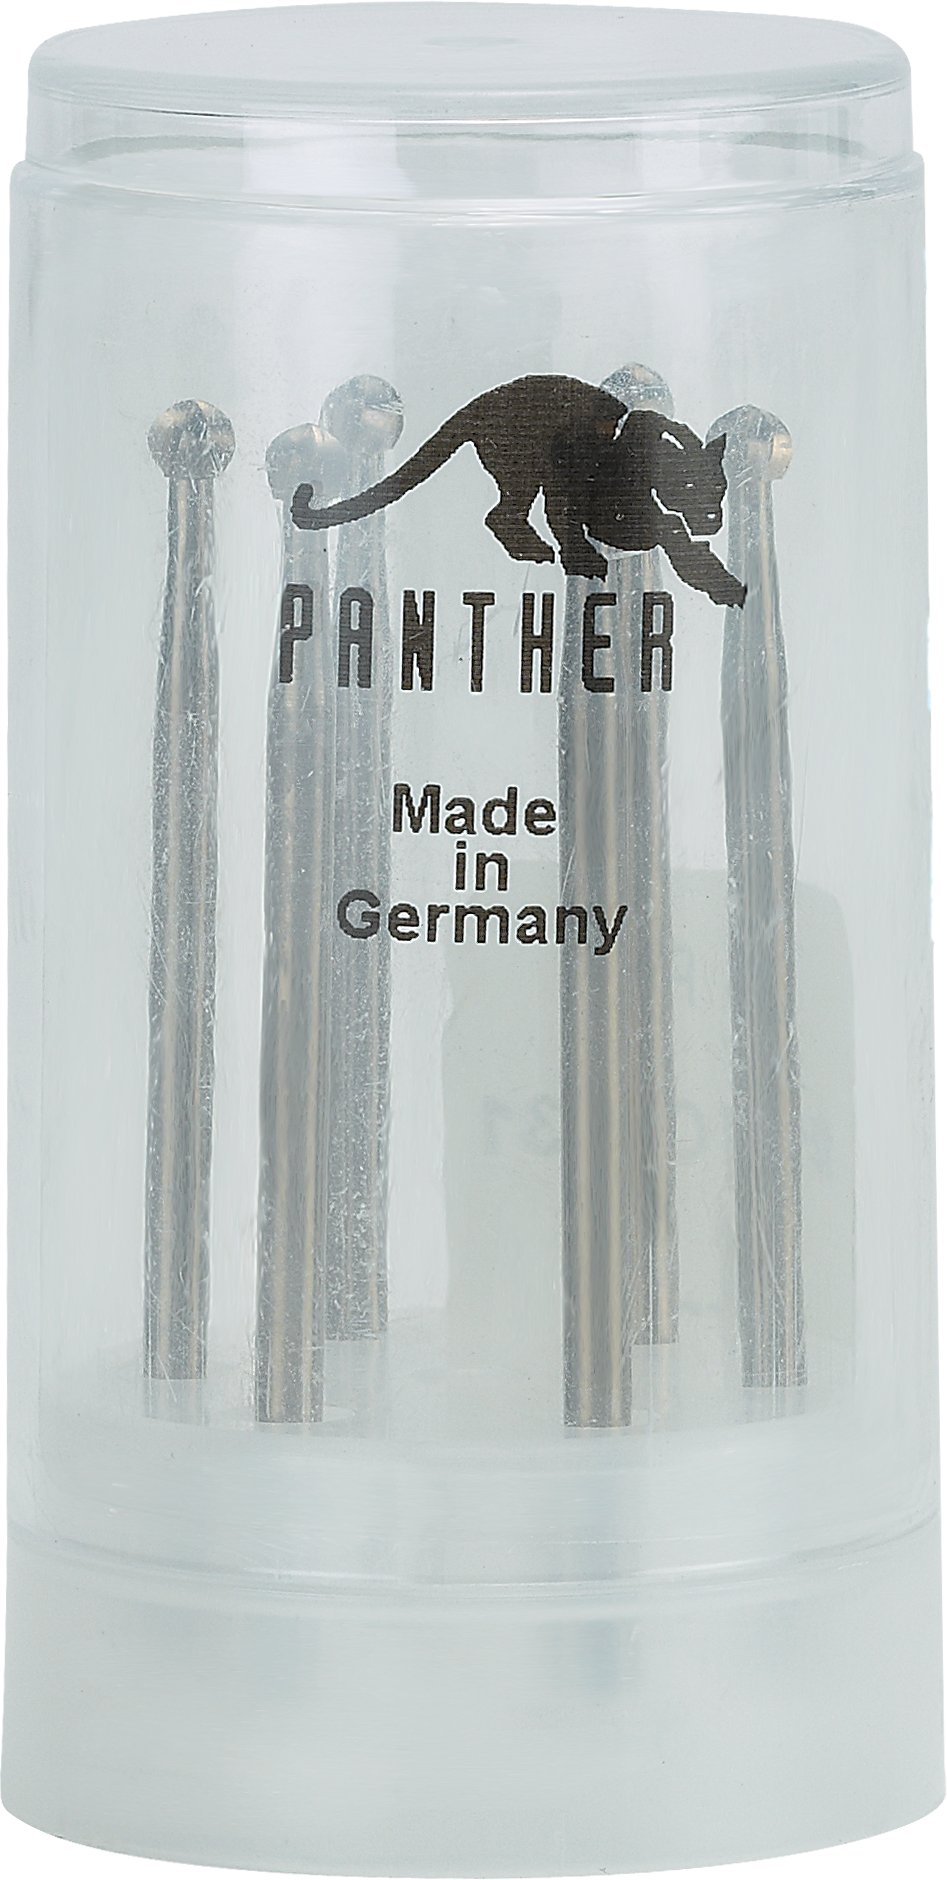 Panther® Wax Carving Burs